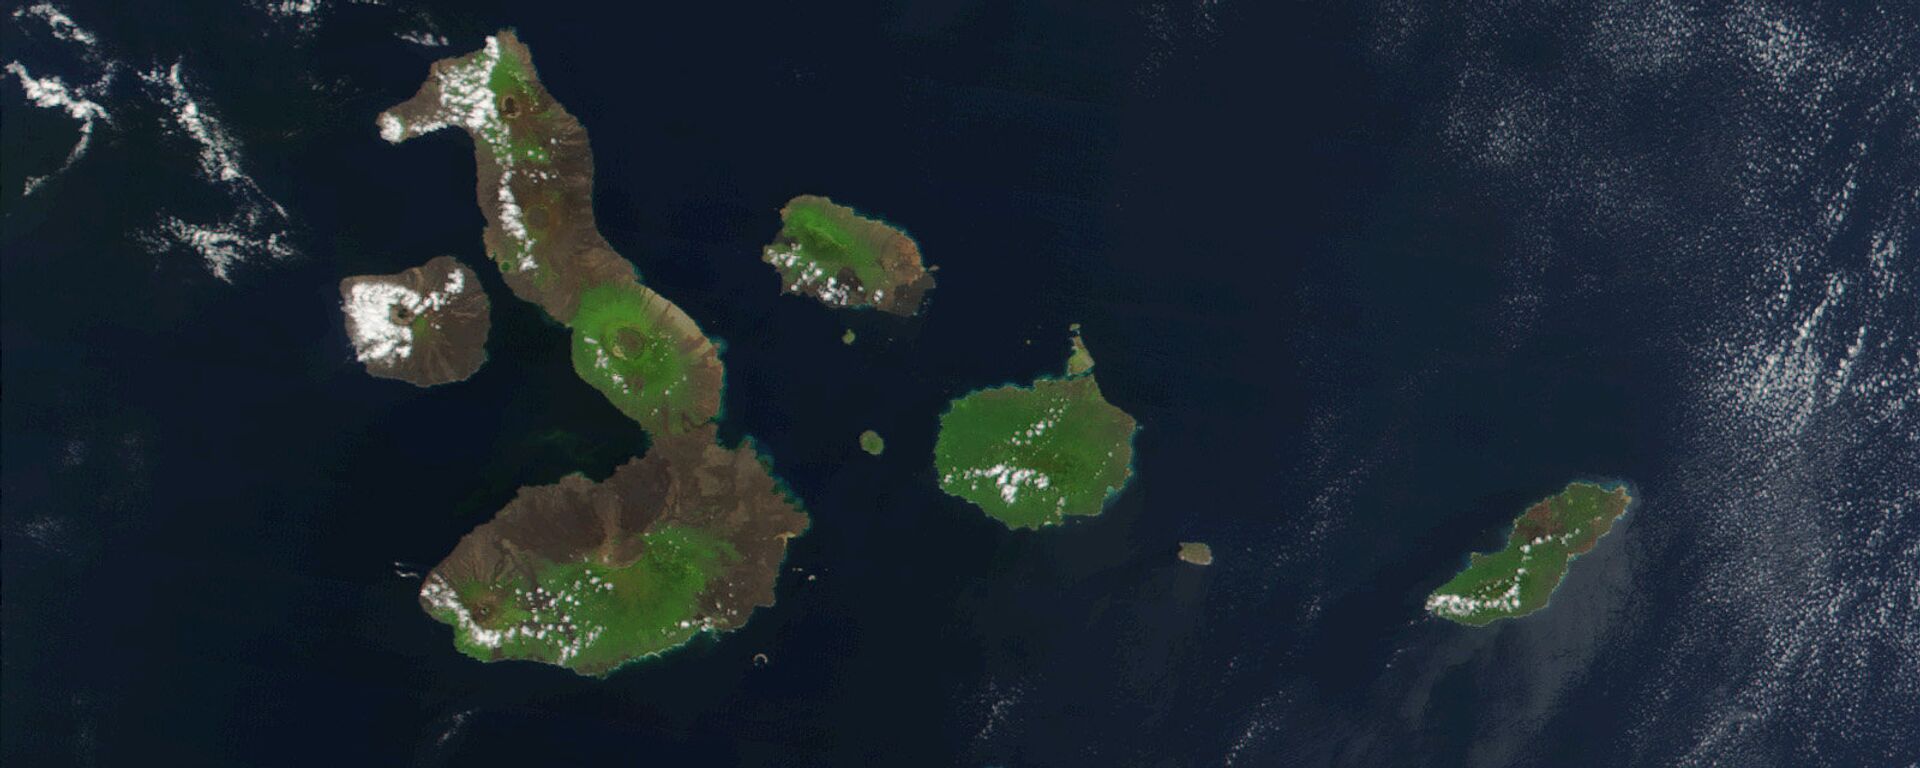 Las Islas Galápagos - Sputnik Mundo, 1920, 05.11.2021